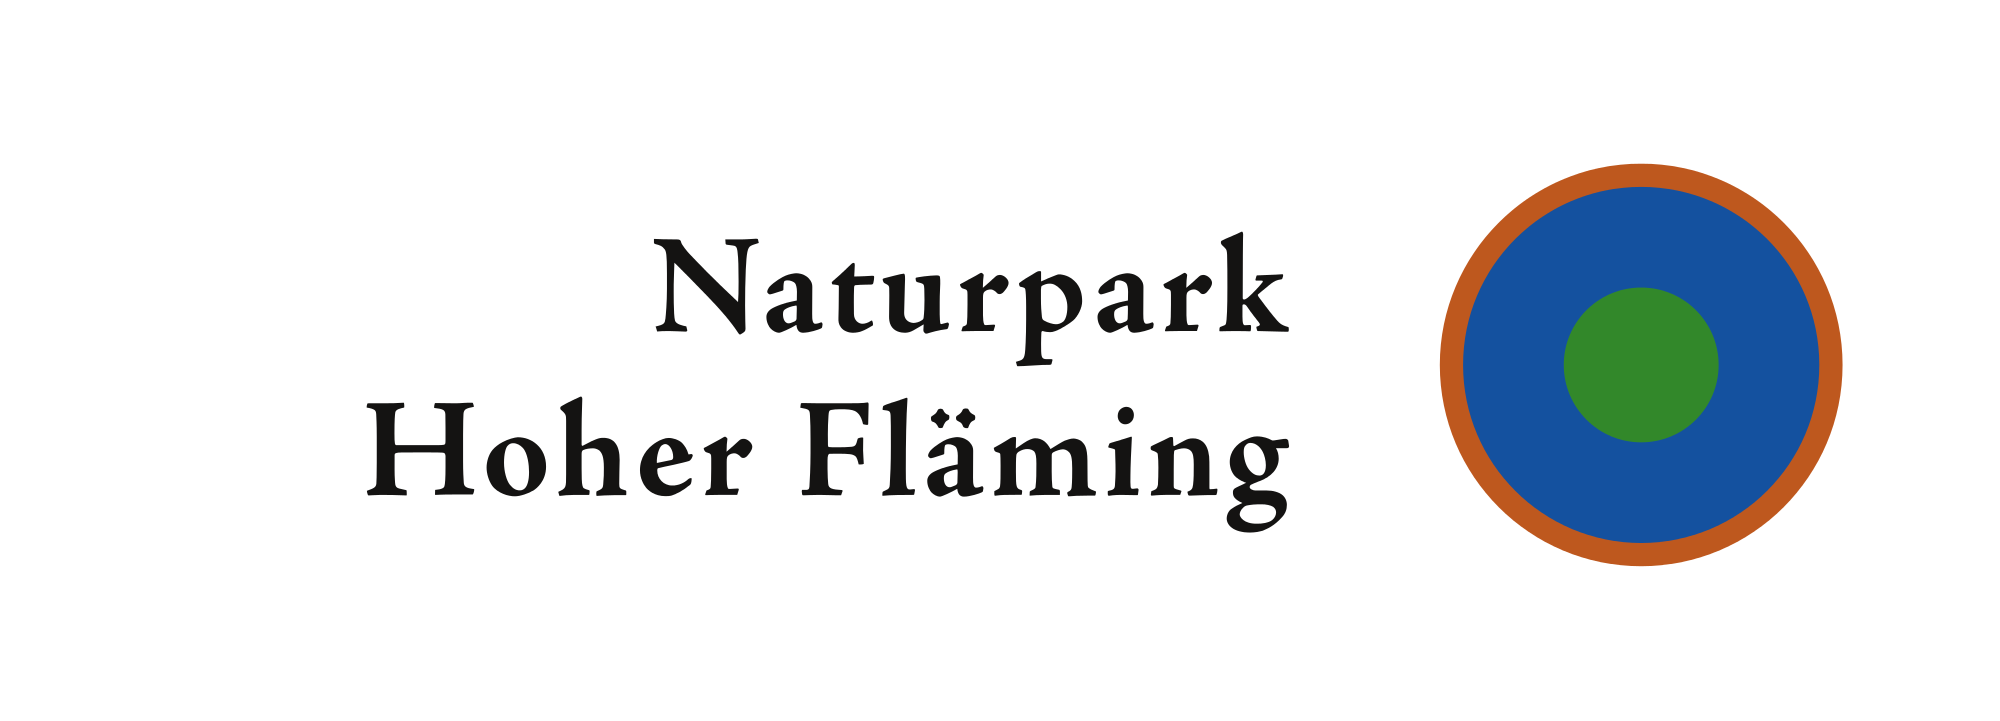 Logo Naturpark Hoher Fläming